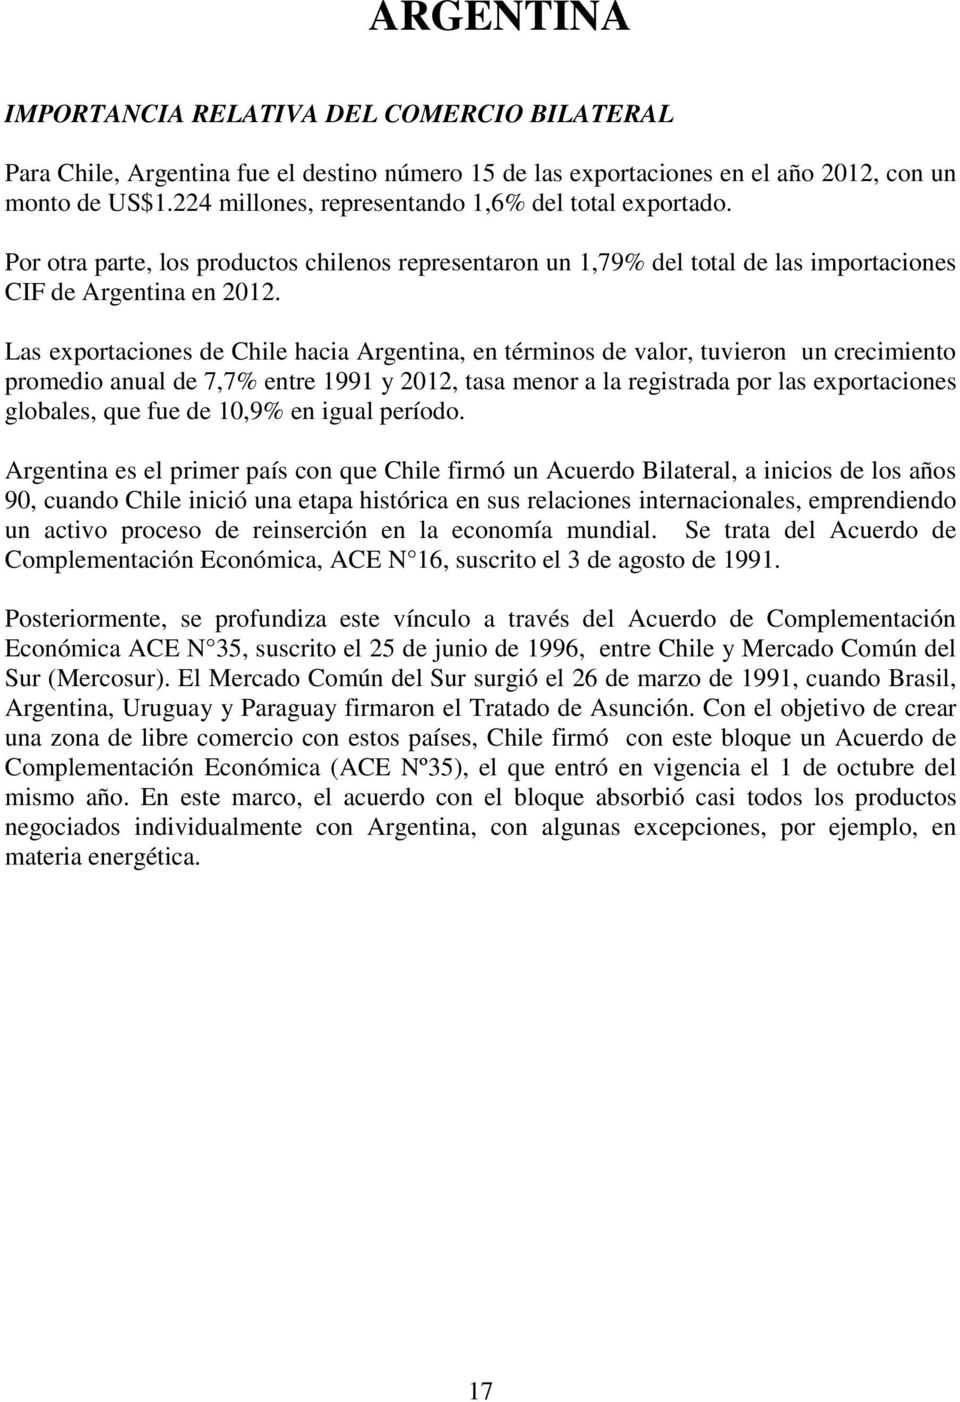 Las exportaciones de Chile hacia Argentina, en términos de valor, tuvieron un crecimiento promedio anual de 7,7% entre 1991 y 2012, tasa menor a la registrada por las exportaciones globales, que fue